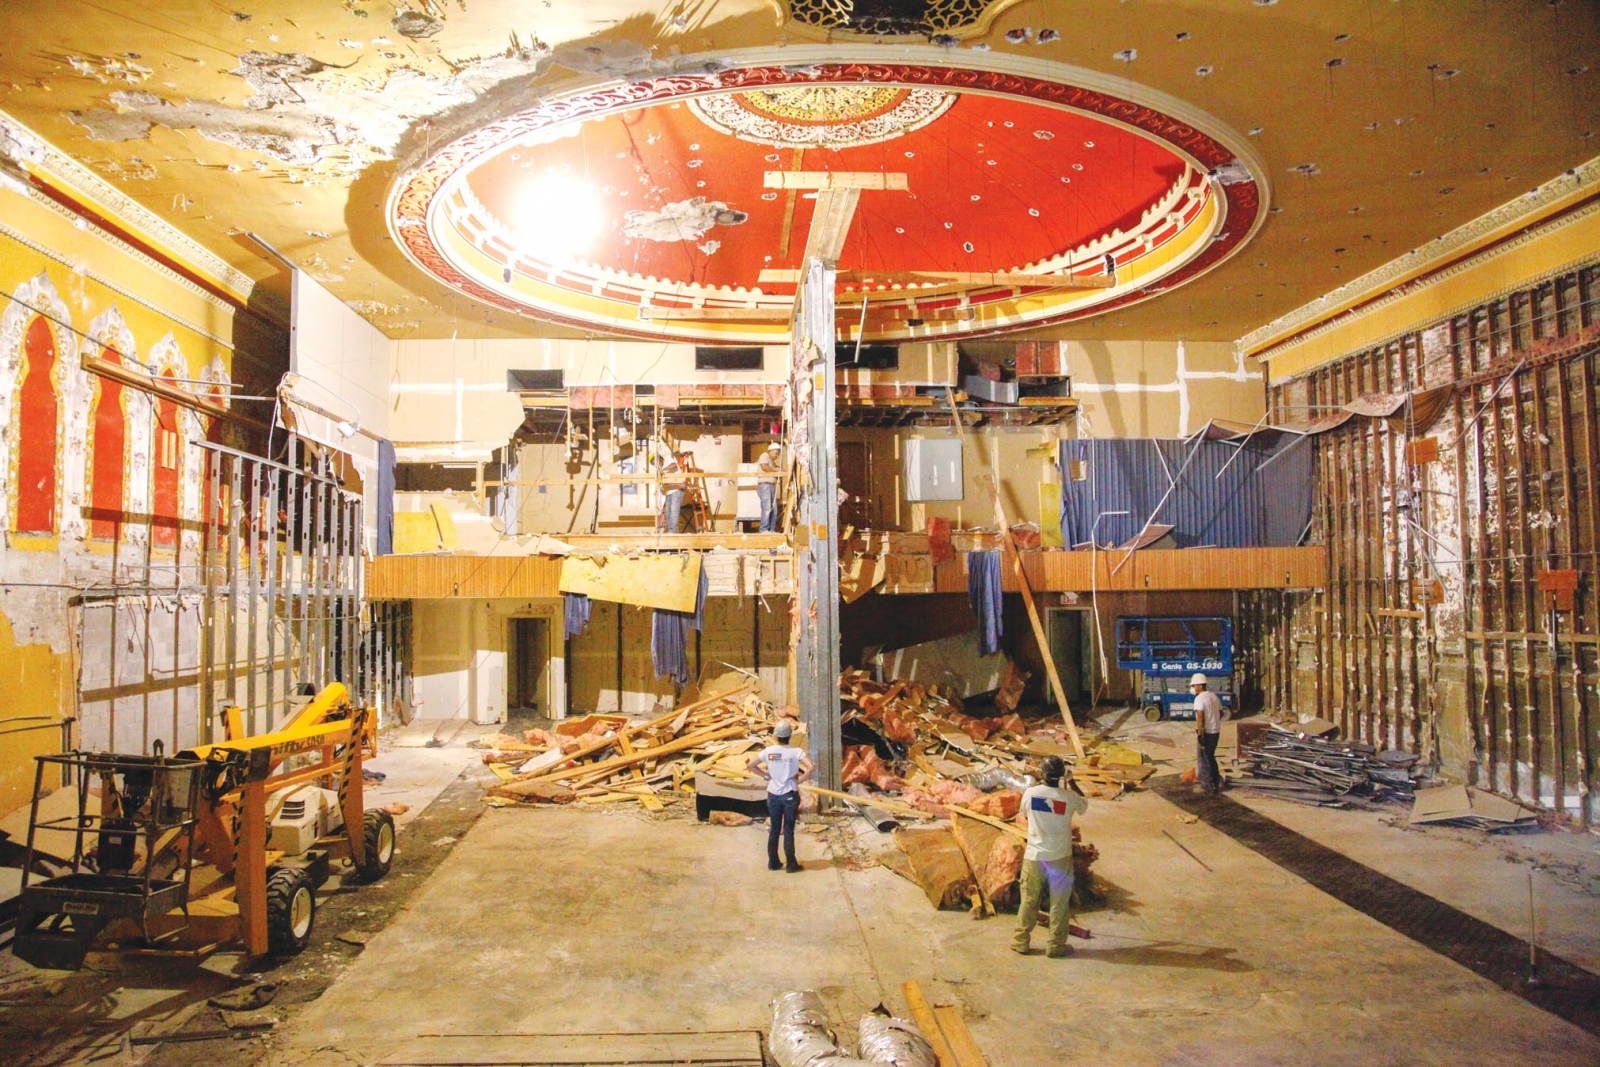 Cinema restores original Woodstock theater - The Woodstock Independent